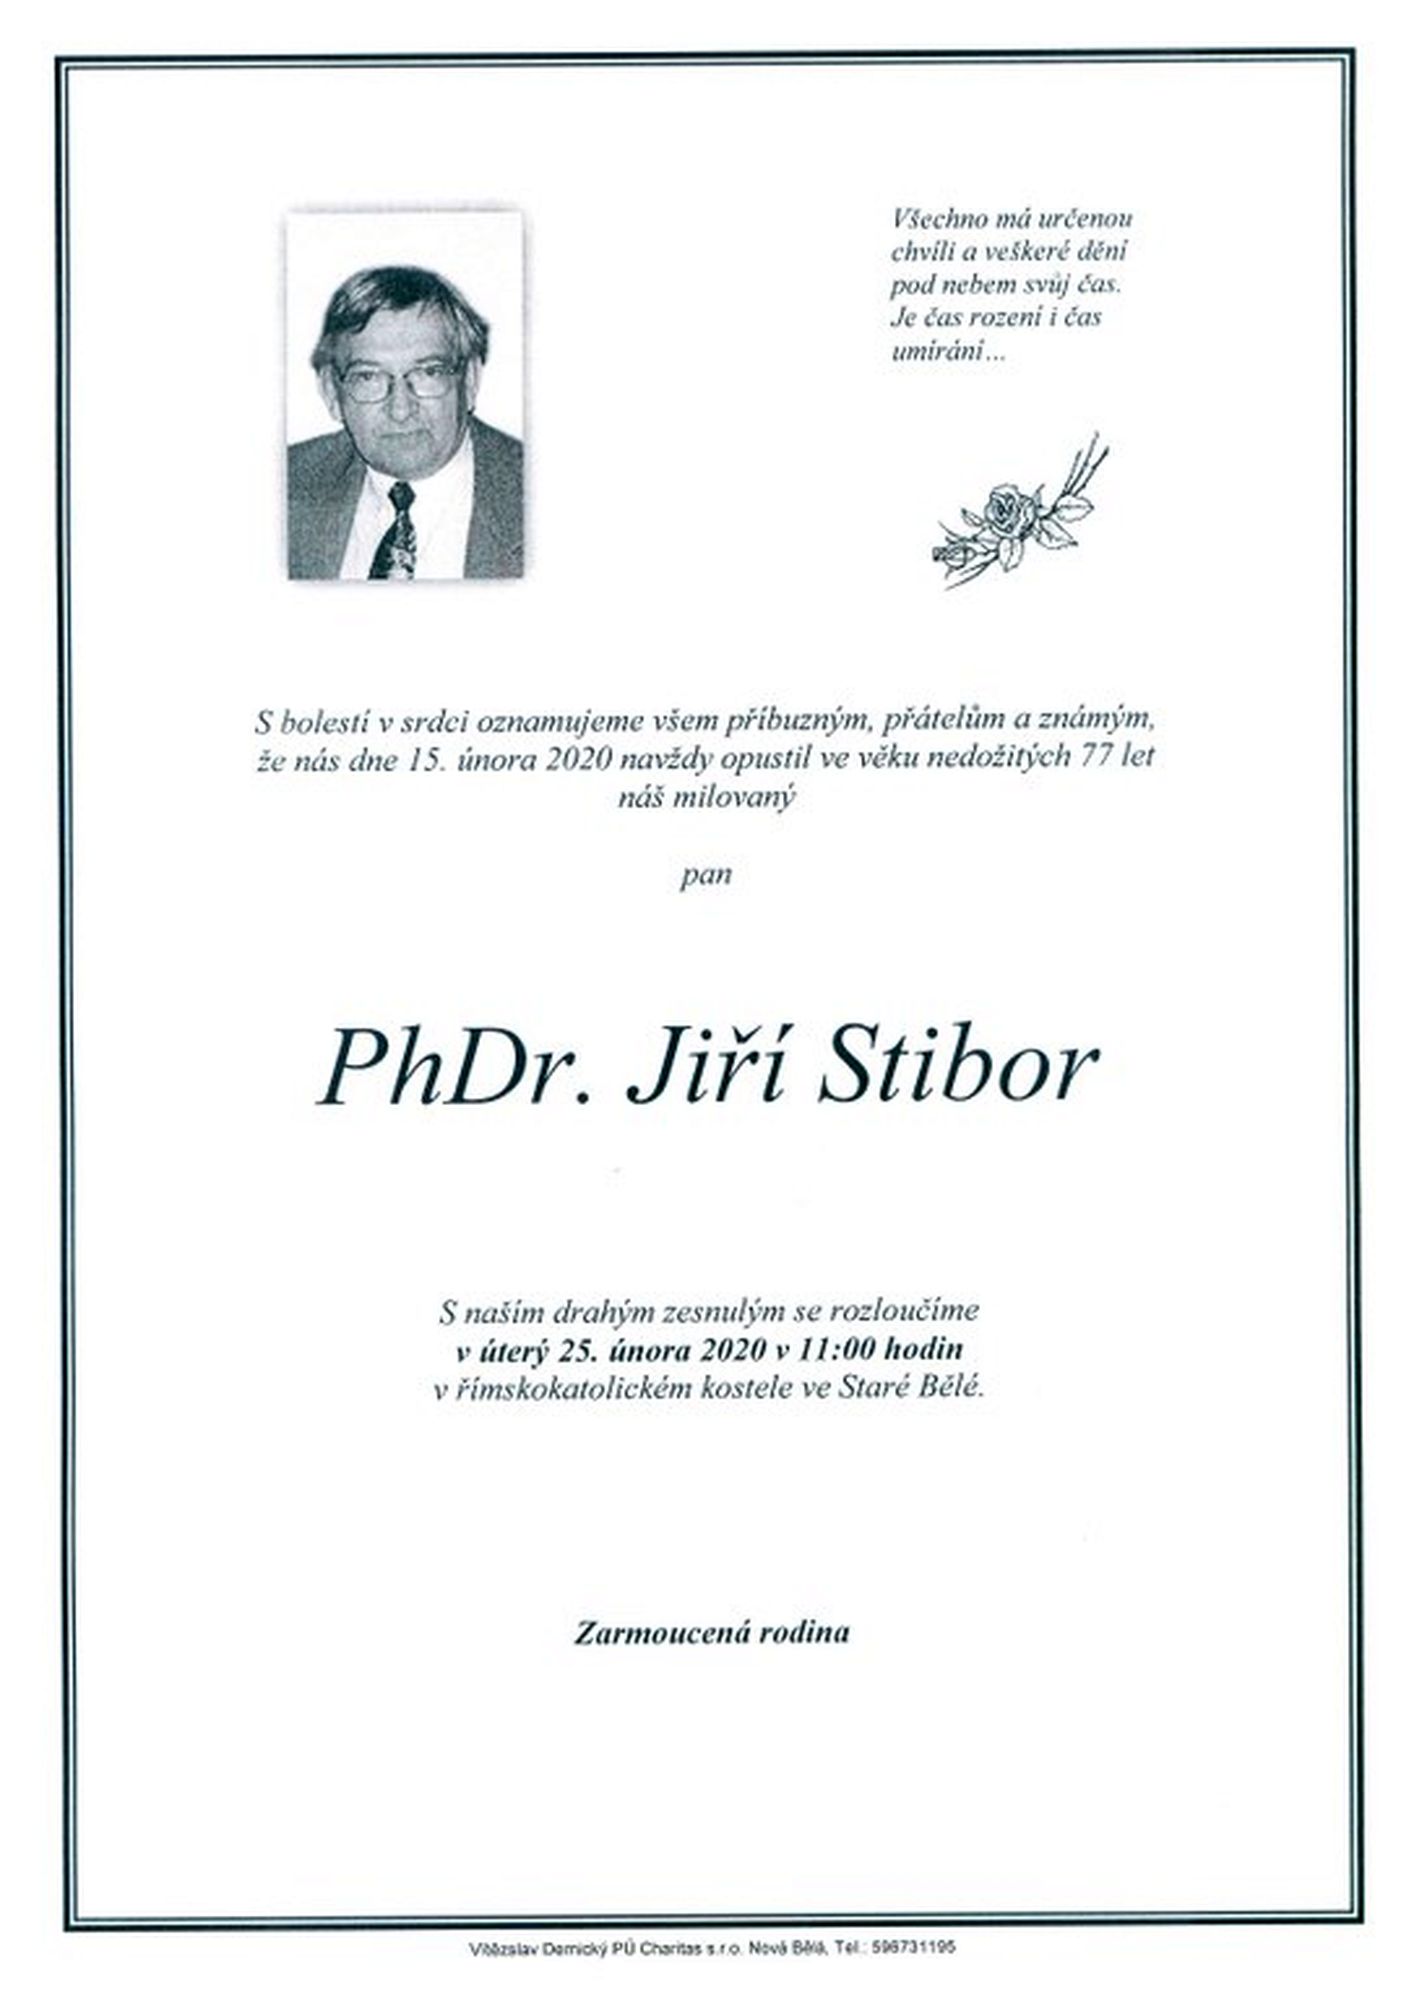 PhDr. Jiří Stibor